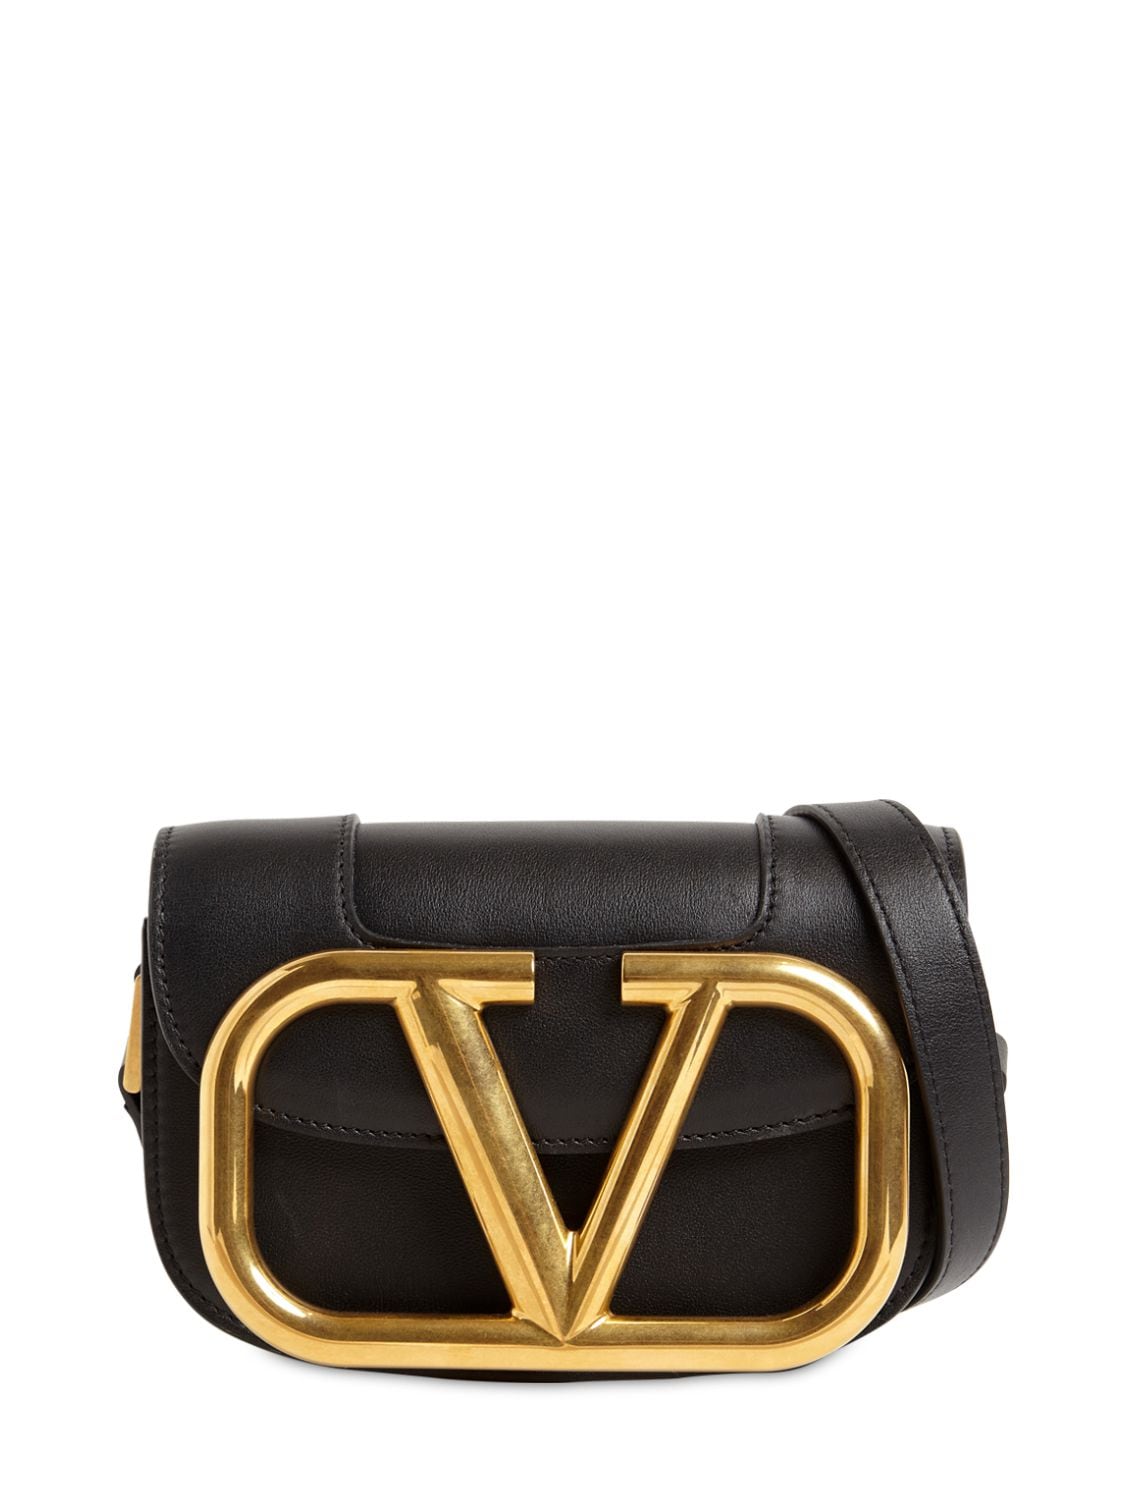 Valentino Garavani Supervee Sm Leather Shoulder Bag In Black